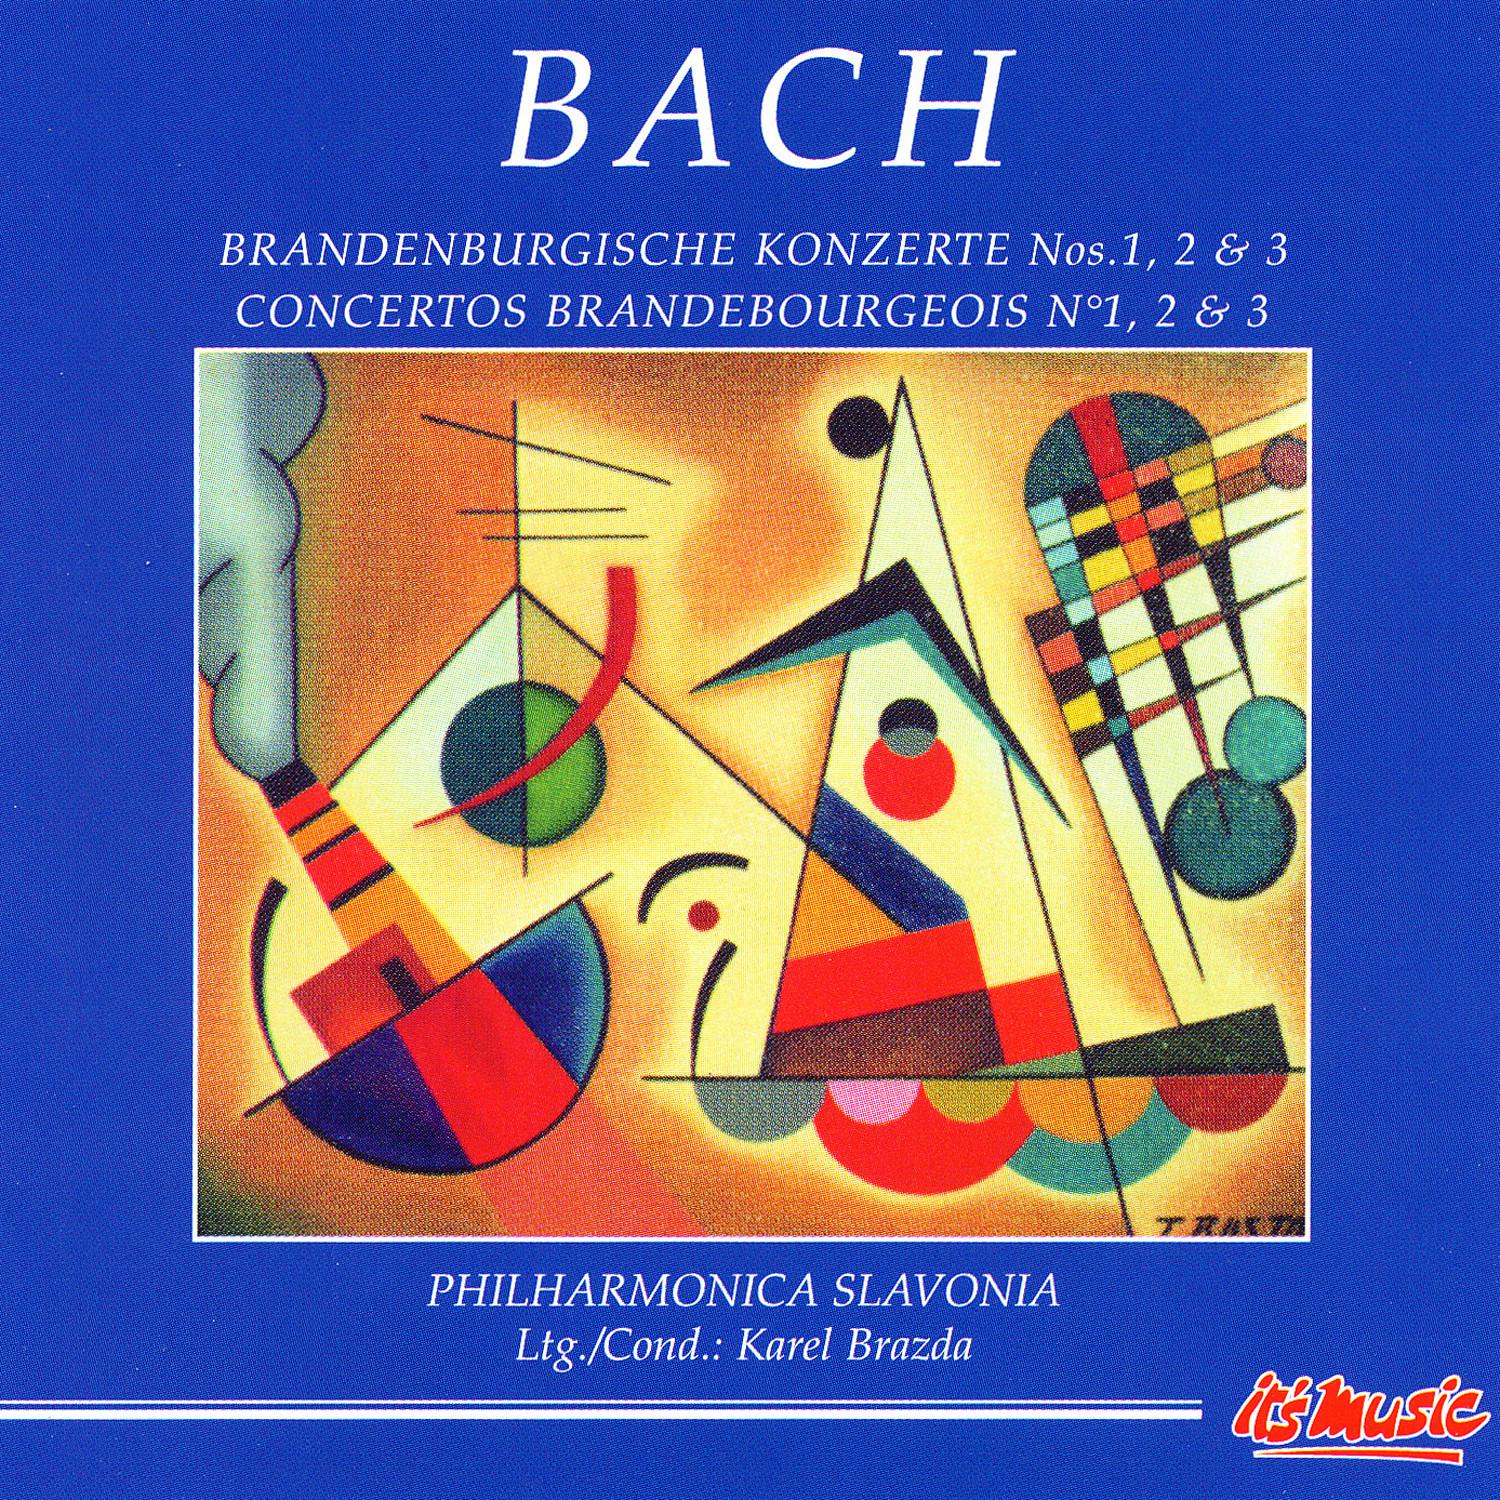 Brandenburg Concerto No. 1 in F major I. Allegro